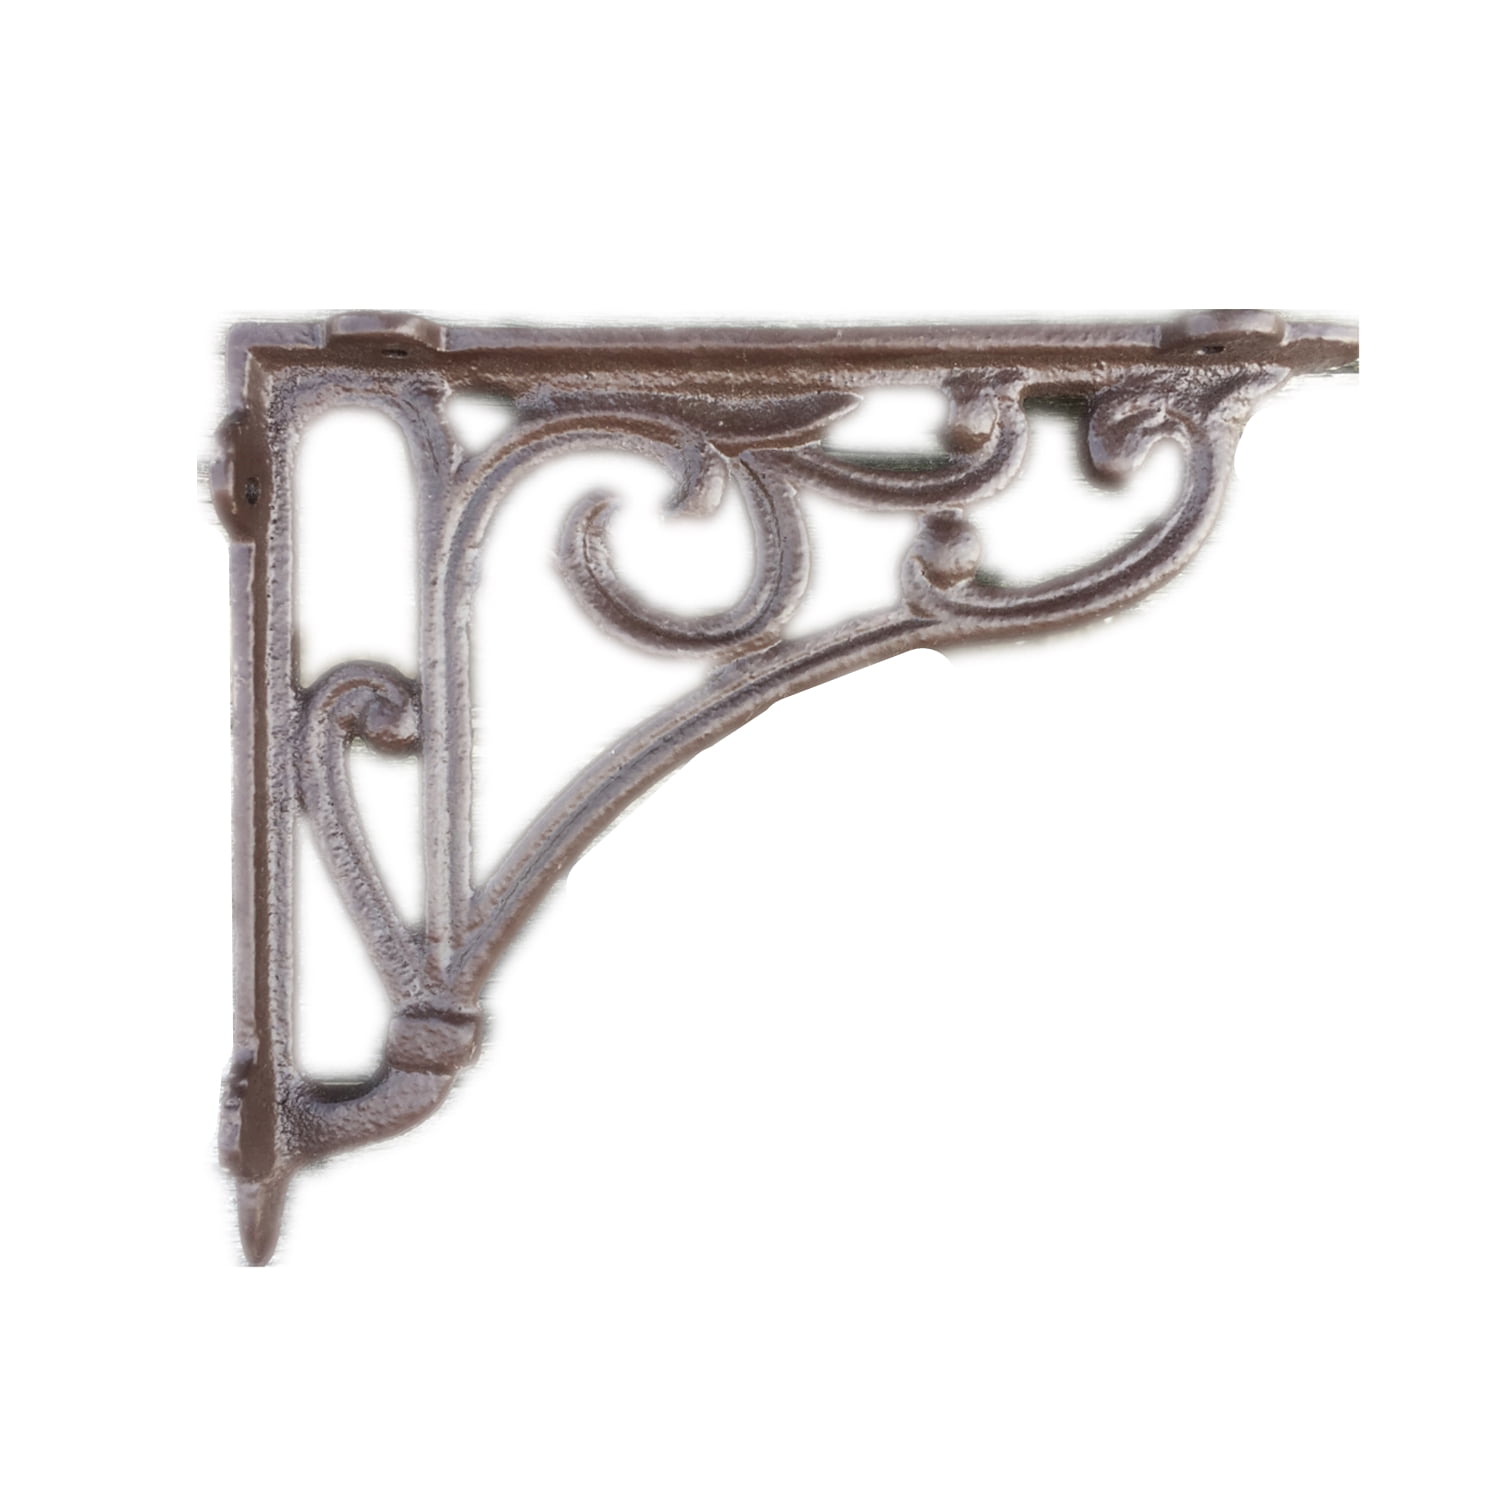 2 HEAVY DUTY Antique Style Cast Iron Brackets Garden Braces Rustic Shelf Bracket 